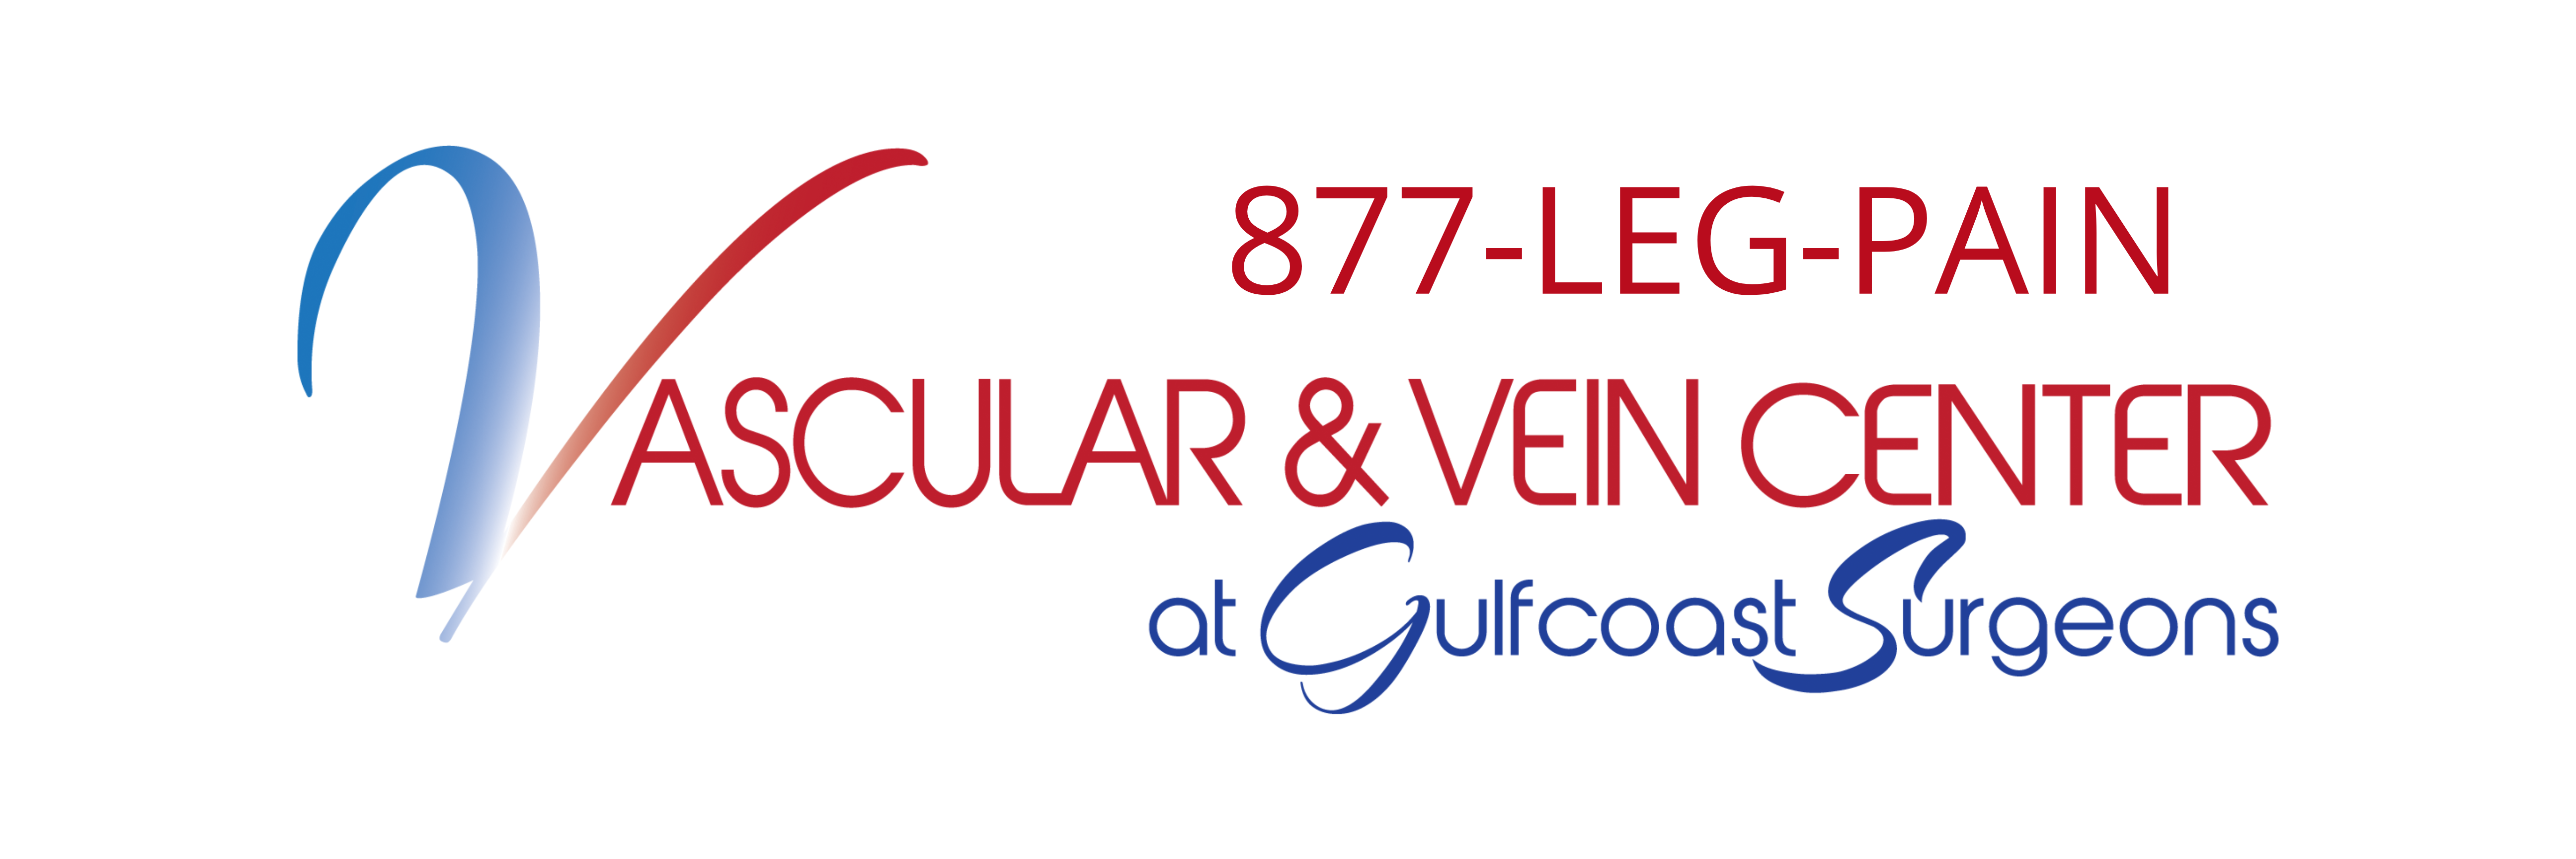 Vascular & Vein Center at Gulfcoast Surgeons